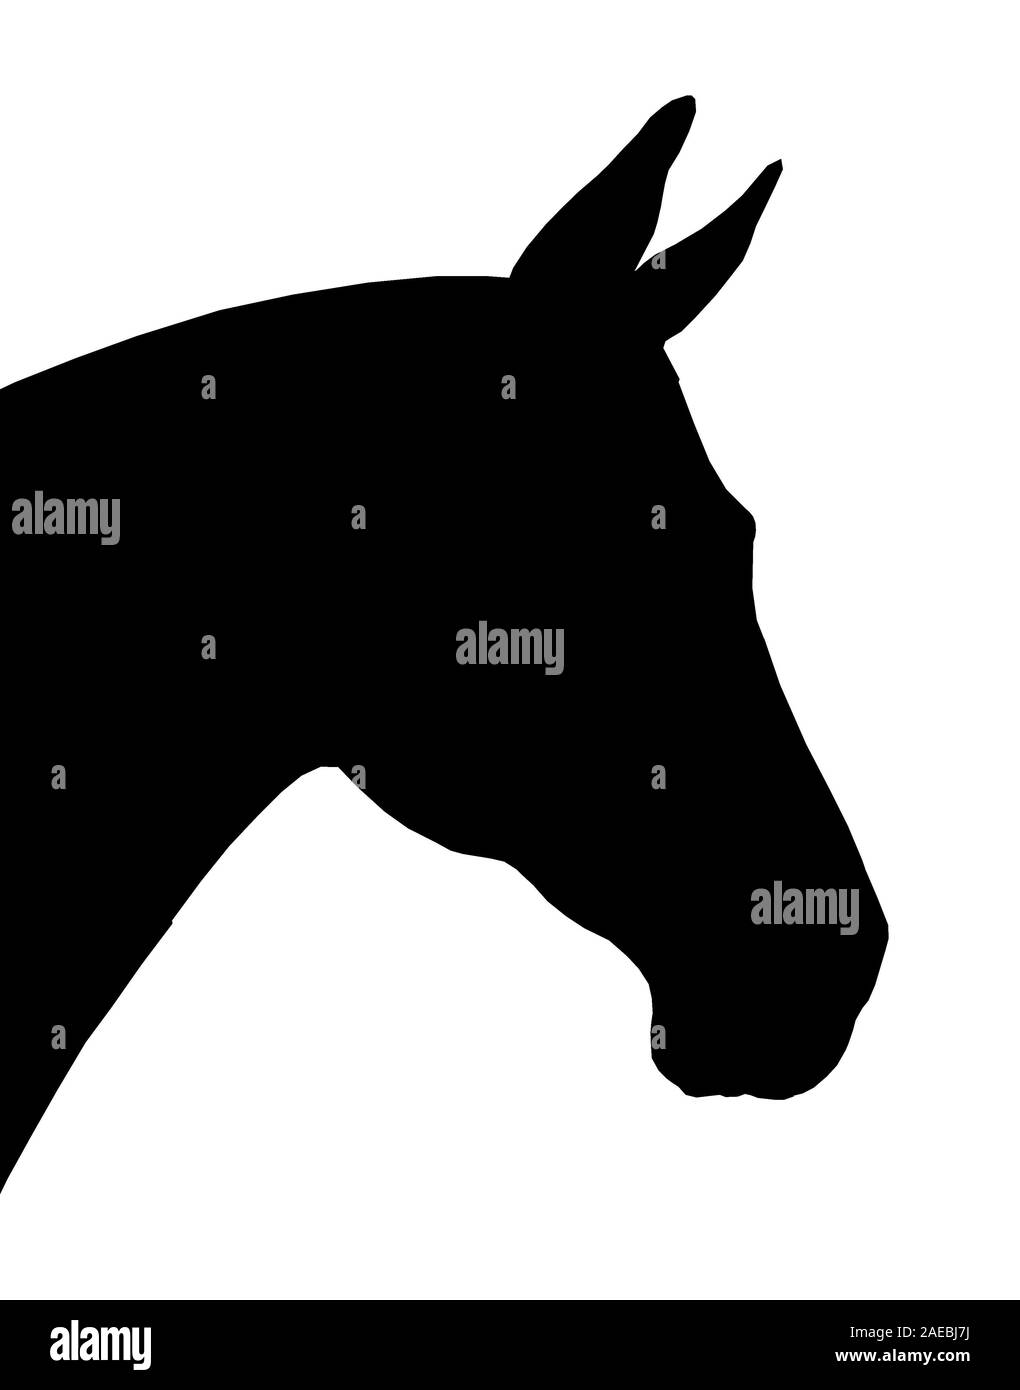 Schönes Pferd. Silhouette Porträt eines Pferdes. Equine Zeichnung. Stockfoto